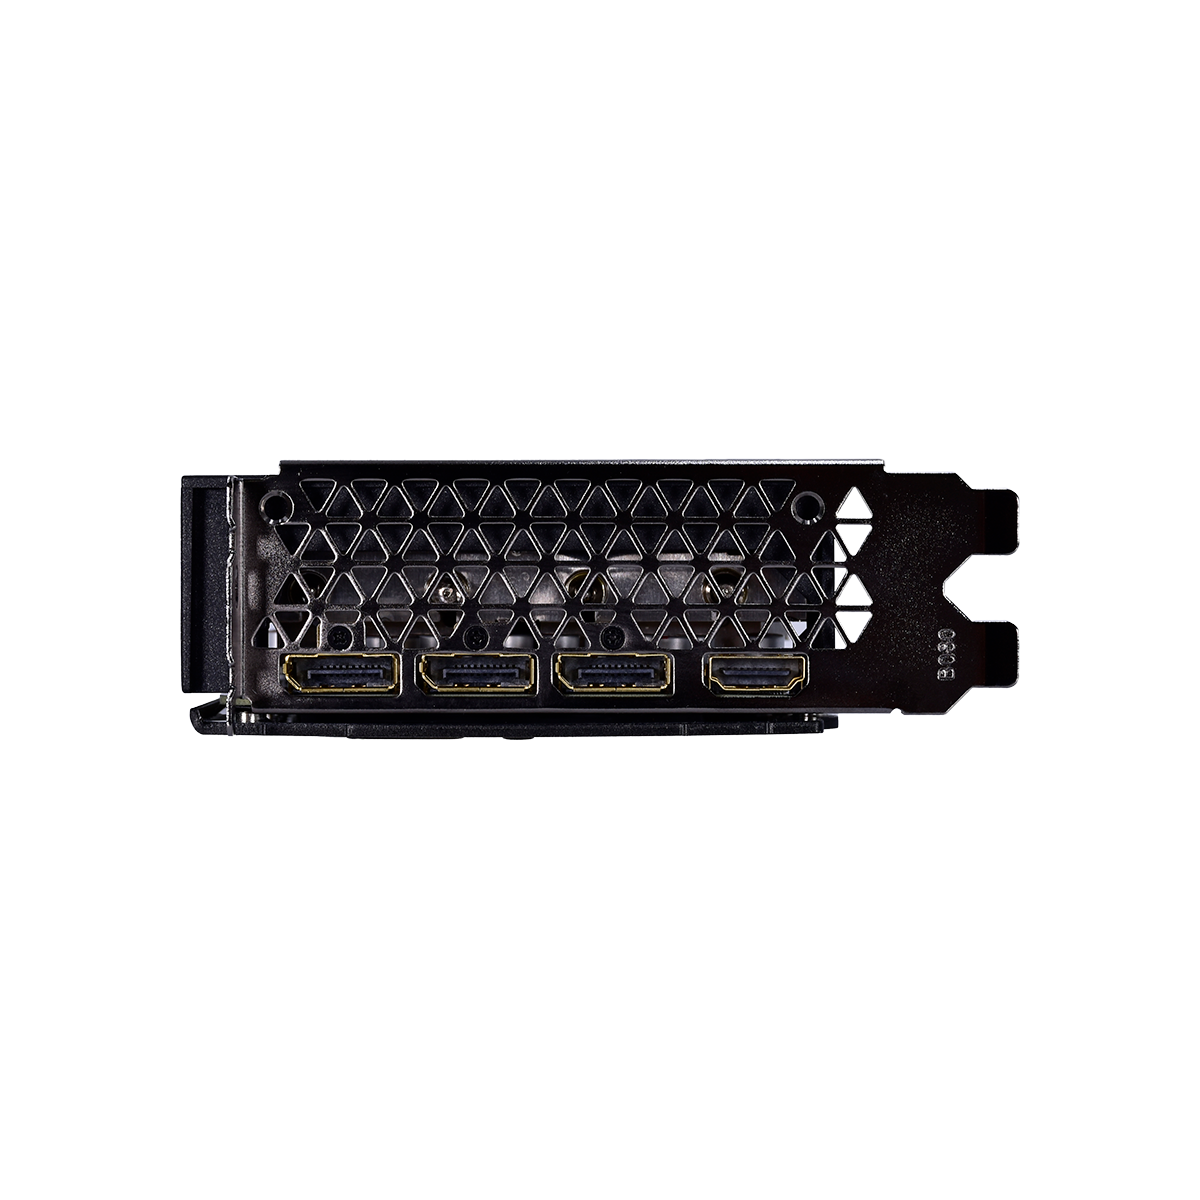 ELSA GeForce RTX 3070 S.A.C - 株式会社 エルザ ジャパン